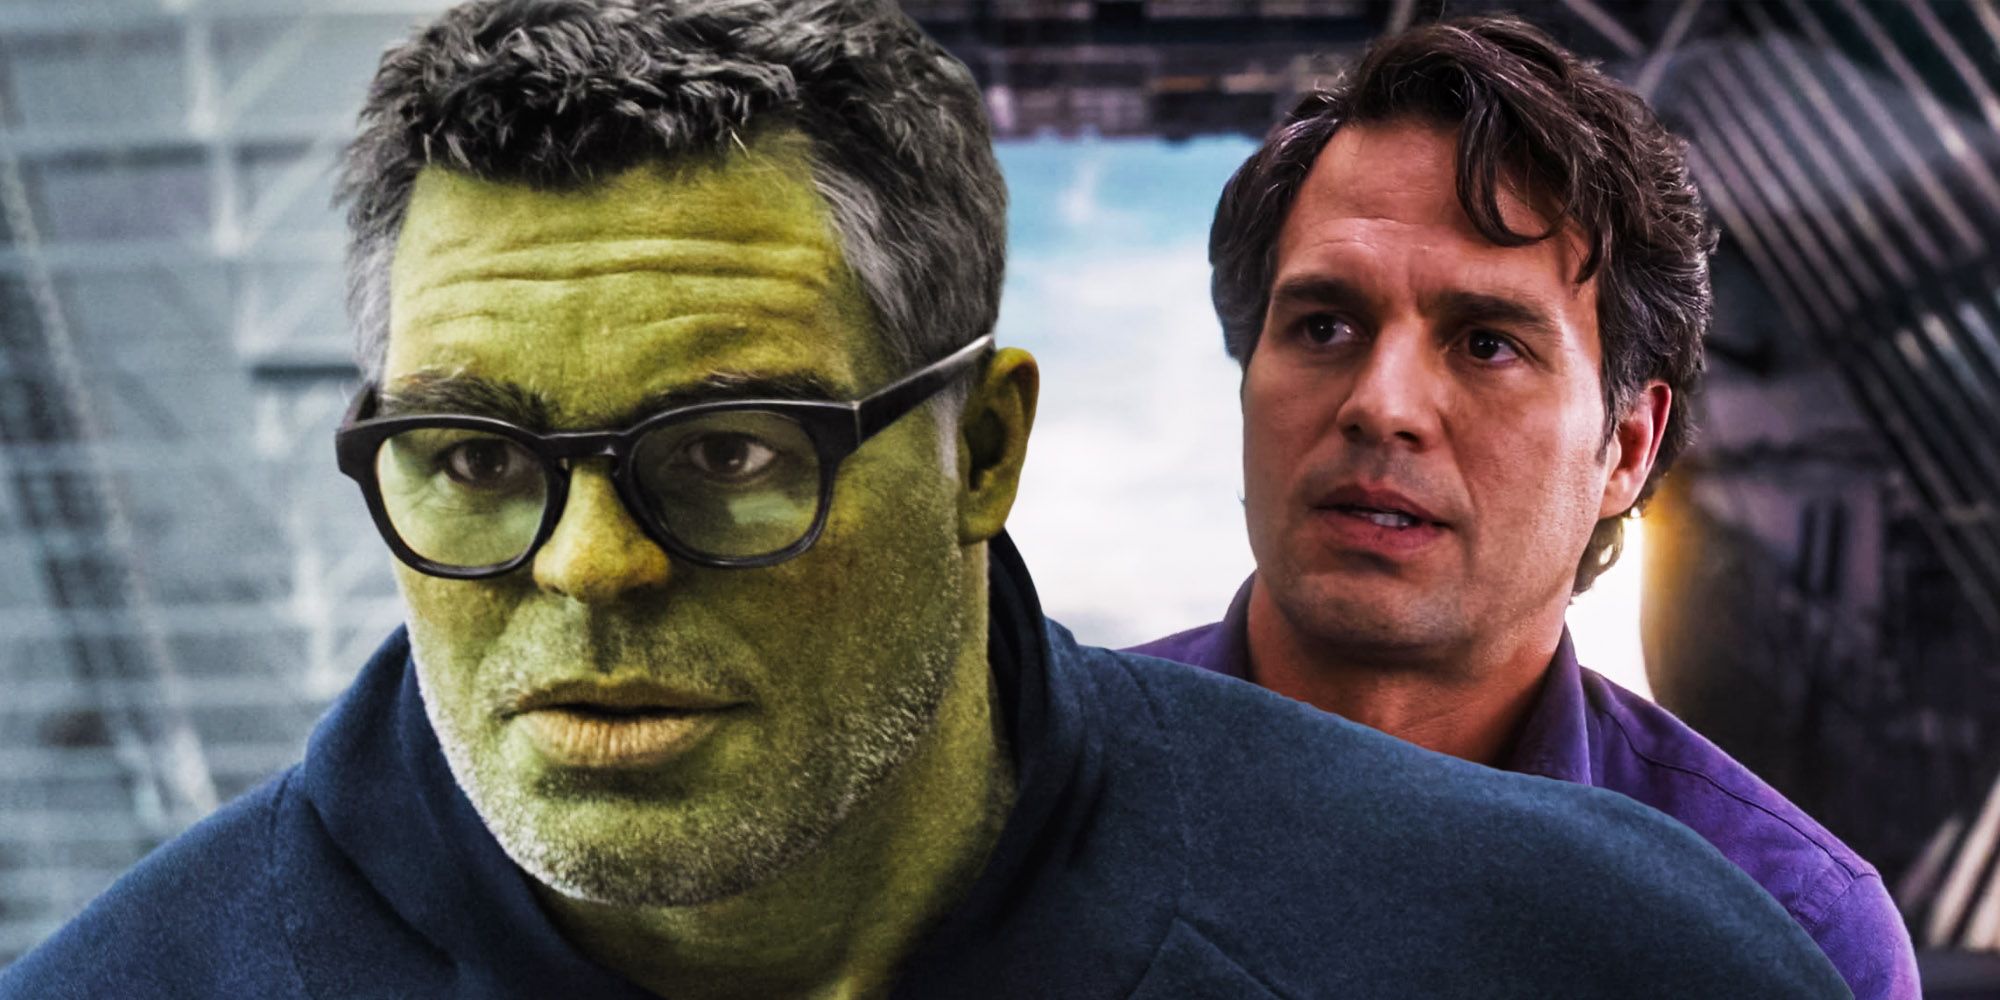 Smart Hulk Avengers endgame Bruce banner the avengers